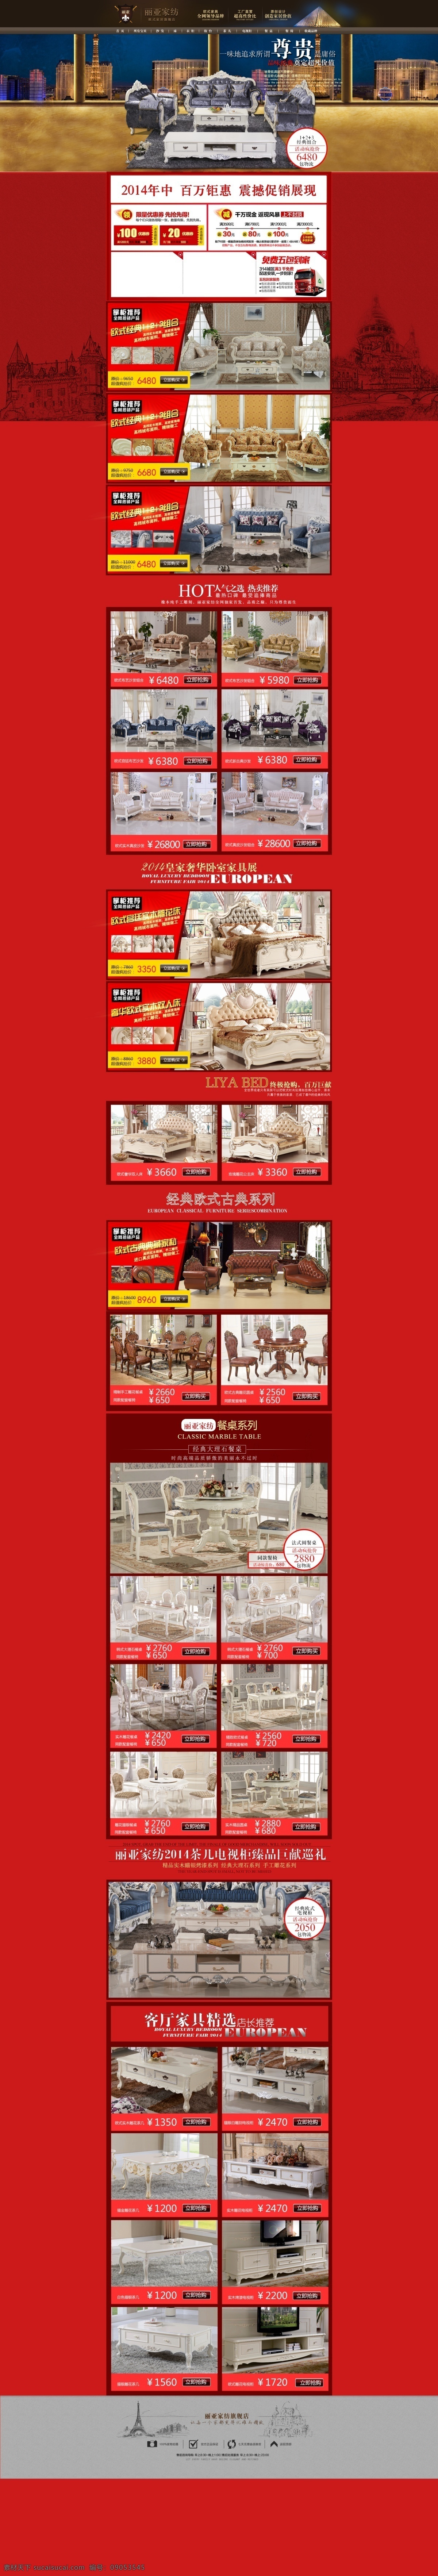 欧式布艺沙发 简欧皮床 美式沙发首页 首页设计 自定义设计 欧式美式沙发 皮床首页 红色